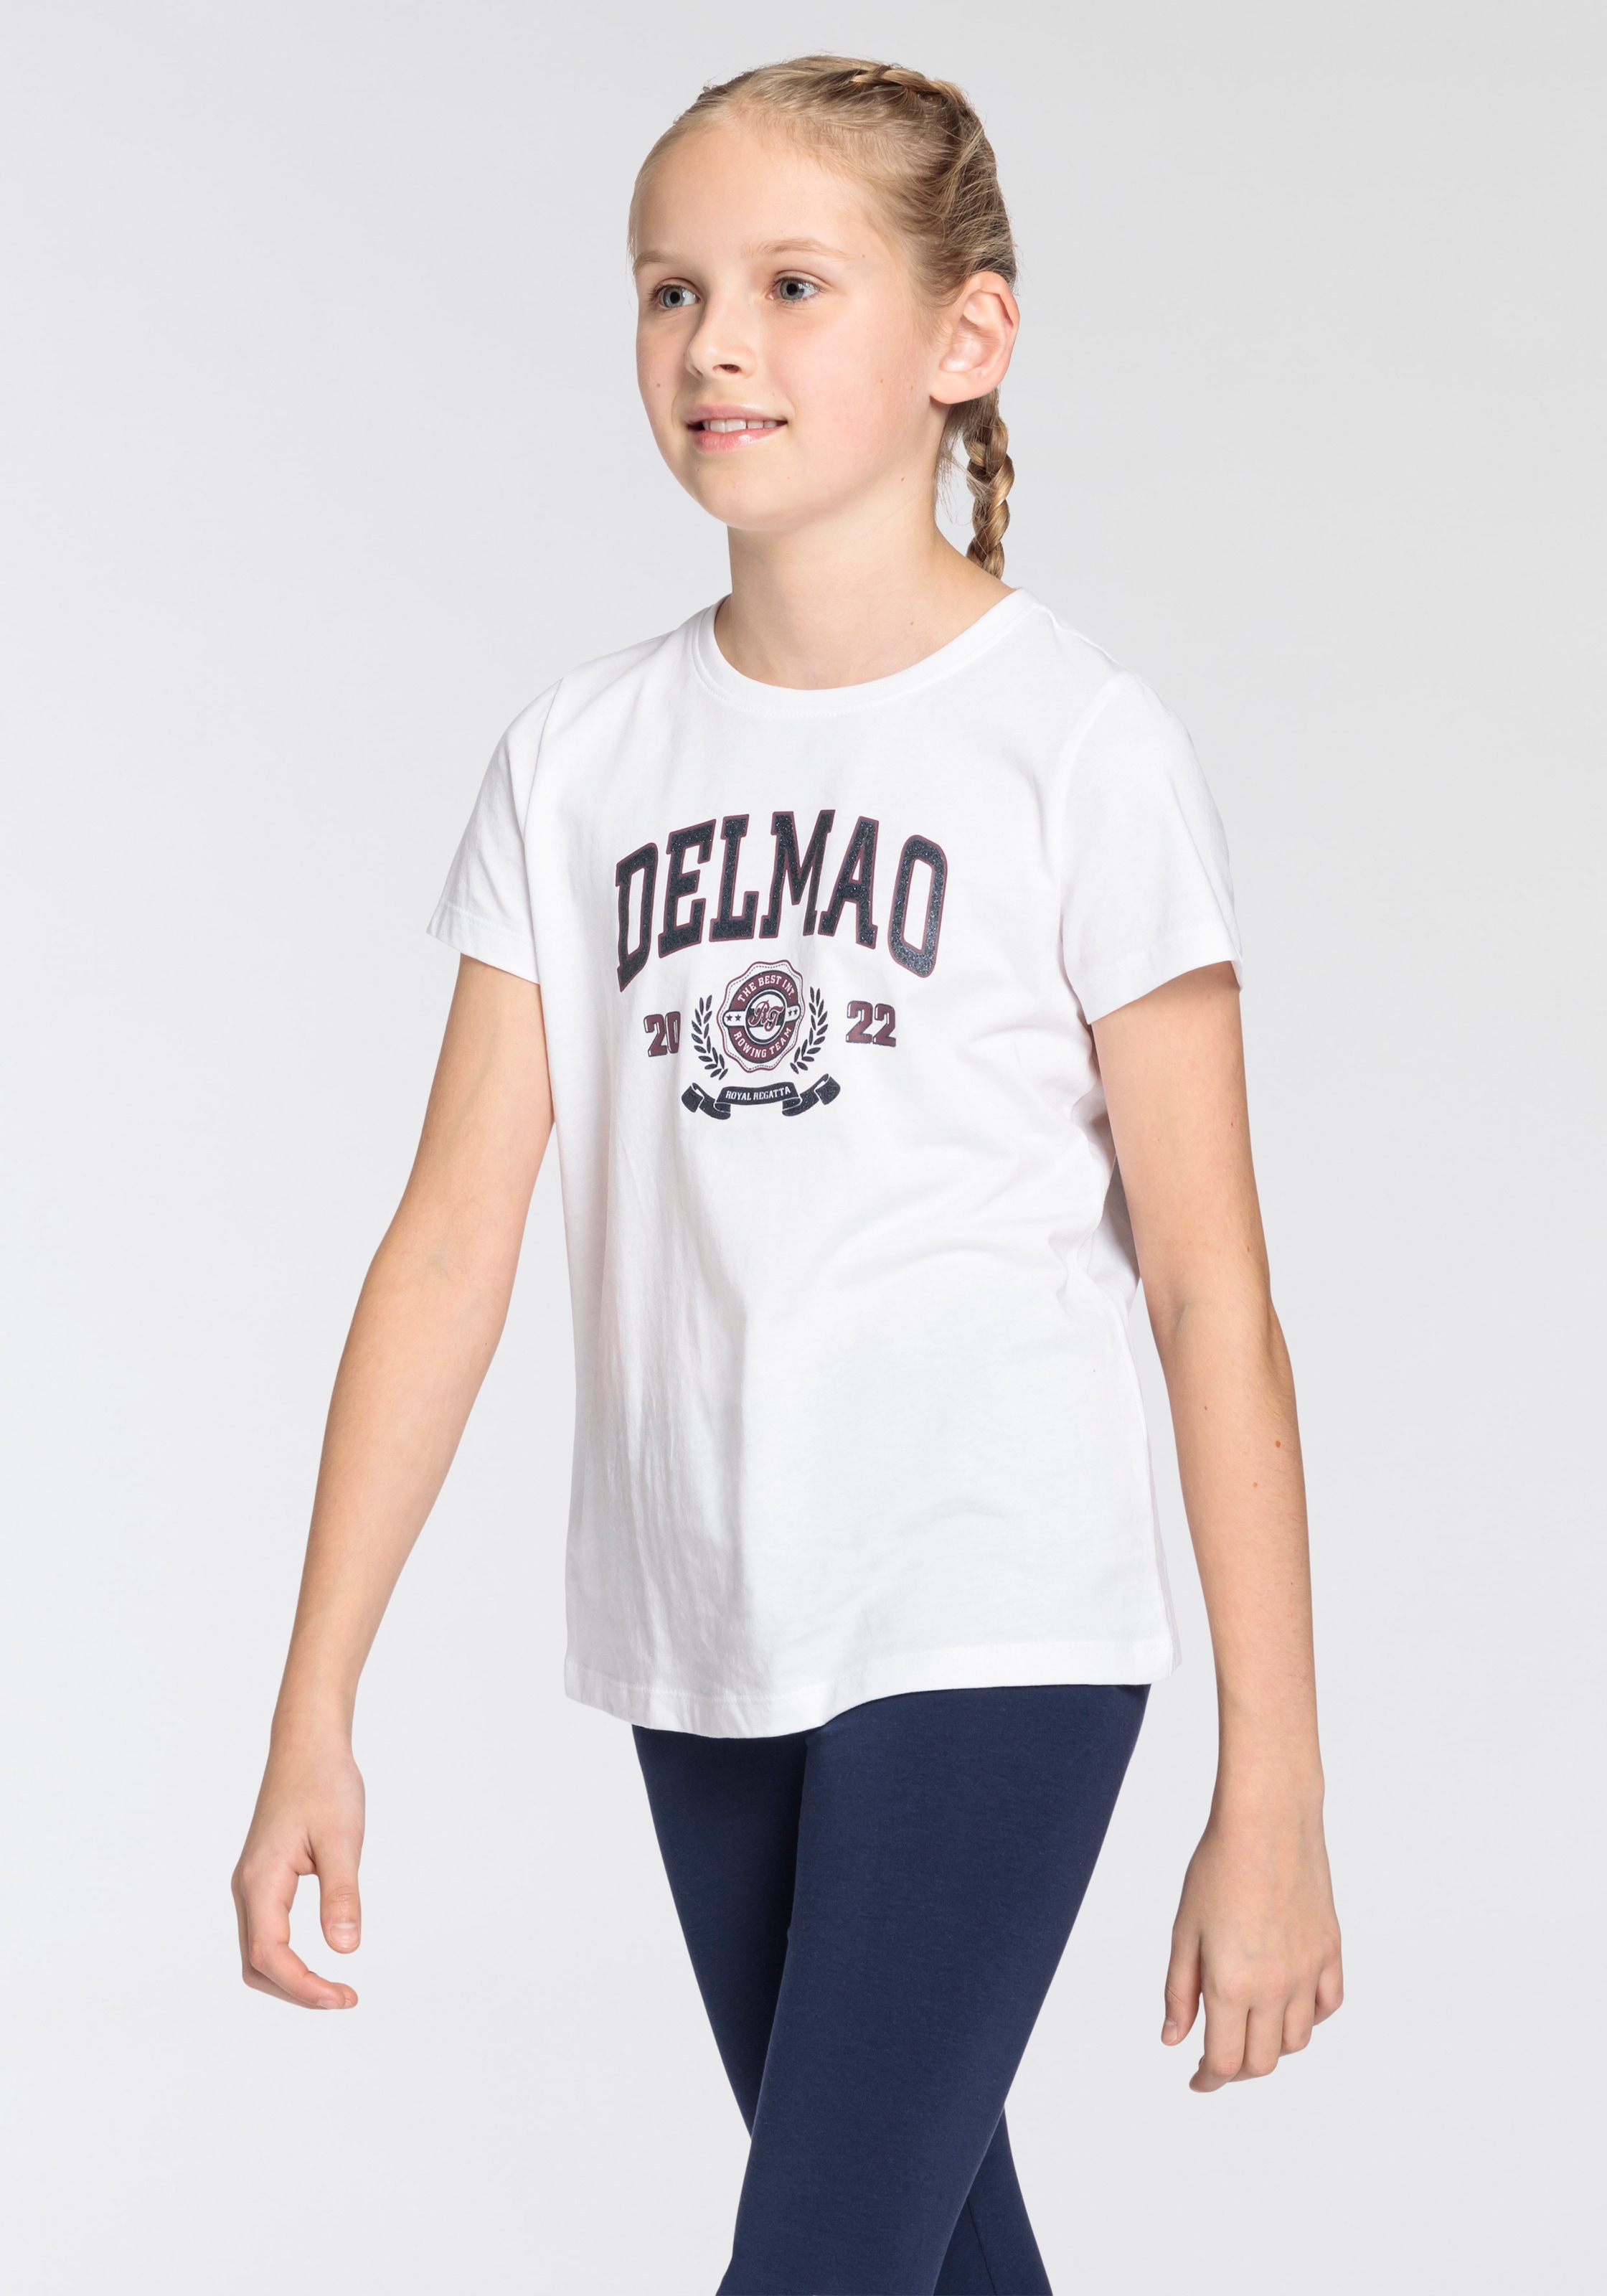 DELMAO T-Shirt online großem bestellen »für mit Mädchen«, Delmao-Logo-Print